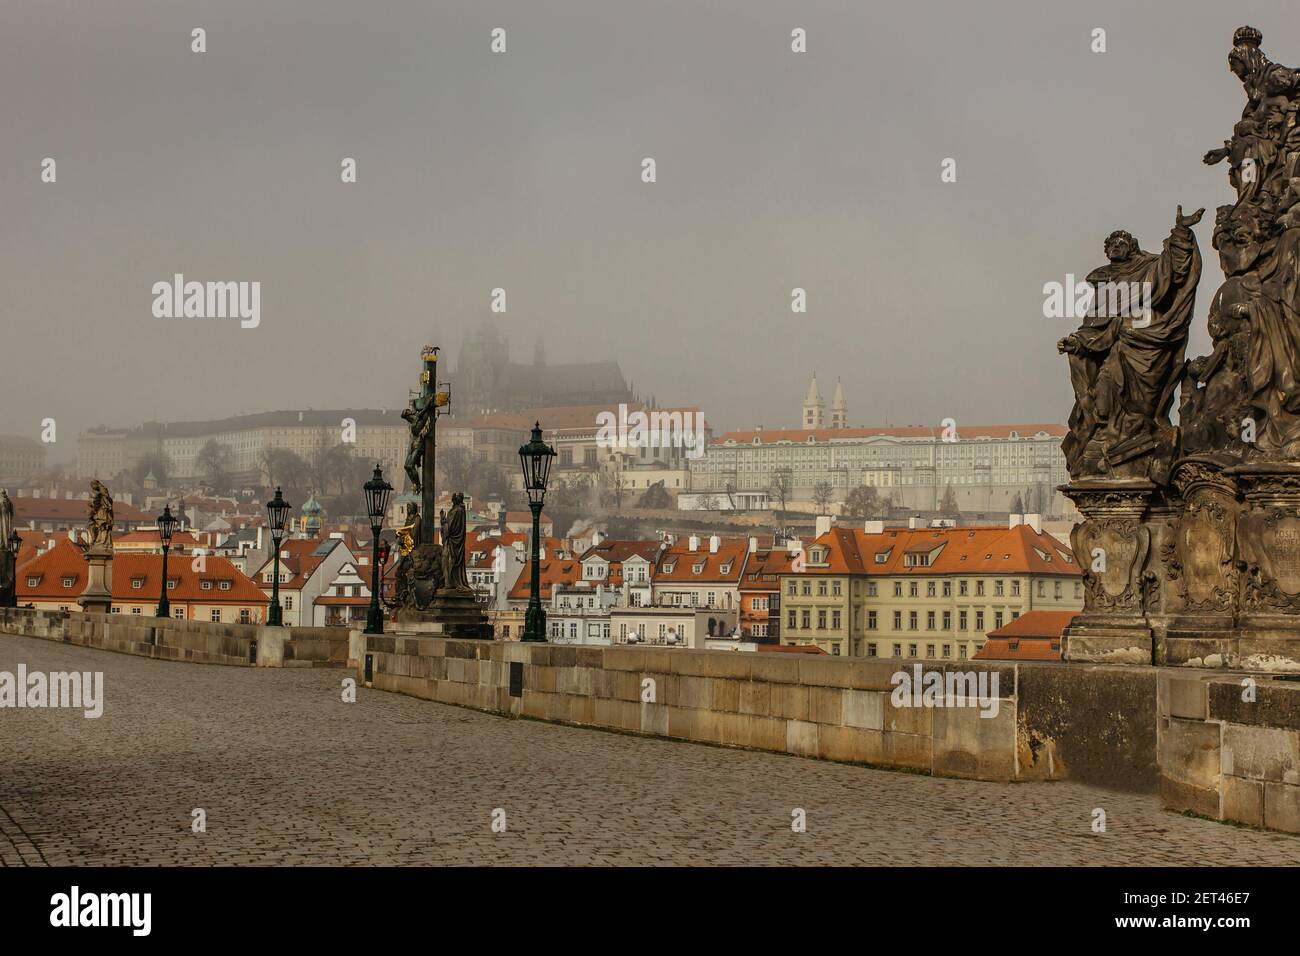 Carte postale vue du château de Prague dans la brume depuis le pont Charles, république tchèque.destination touristique célèbre.panorama de Prague.matin Foggy dans la ville. Banque D'Images